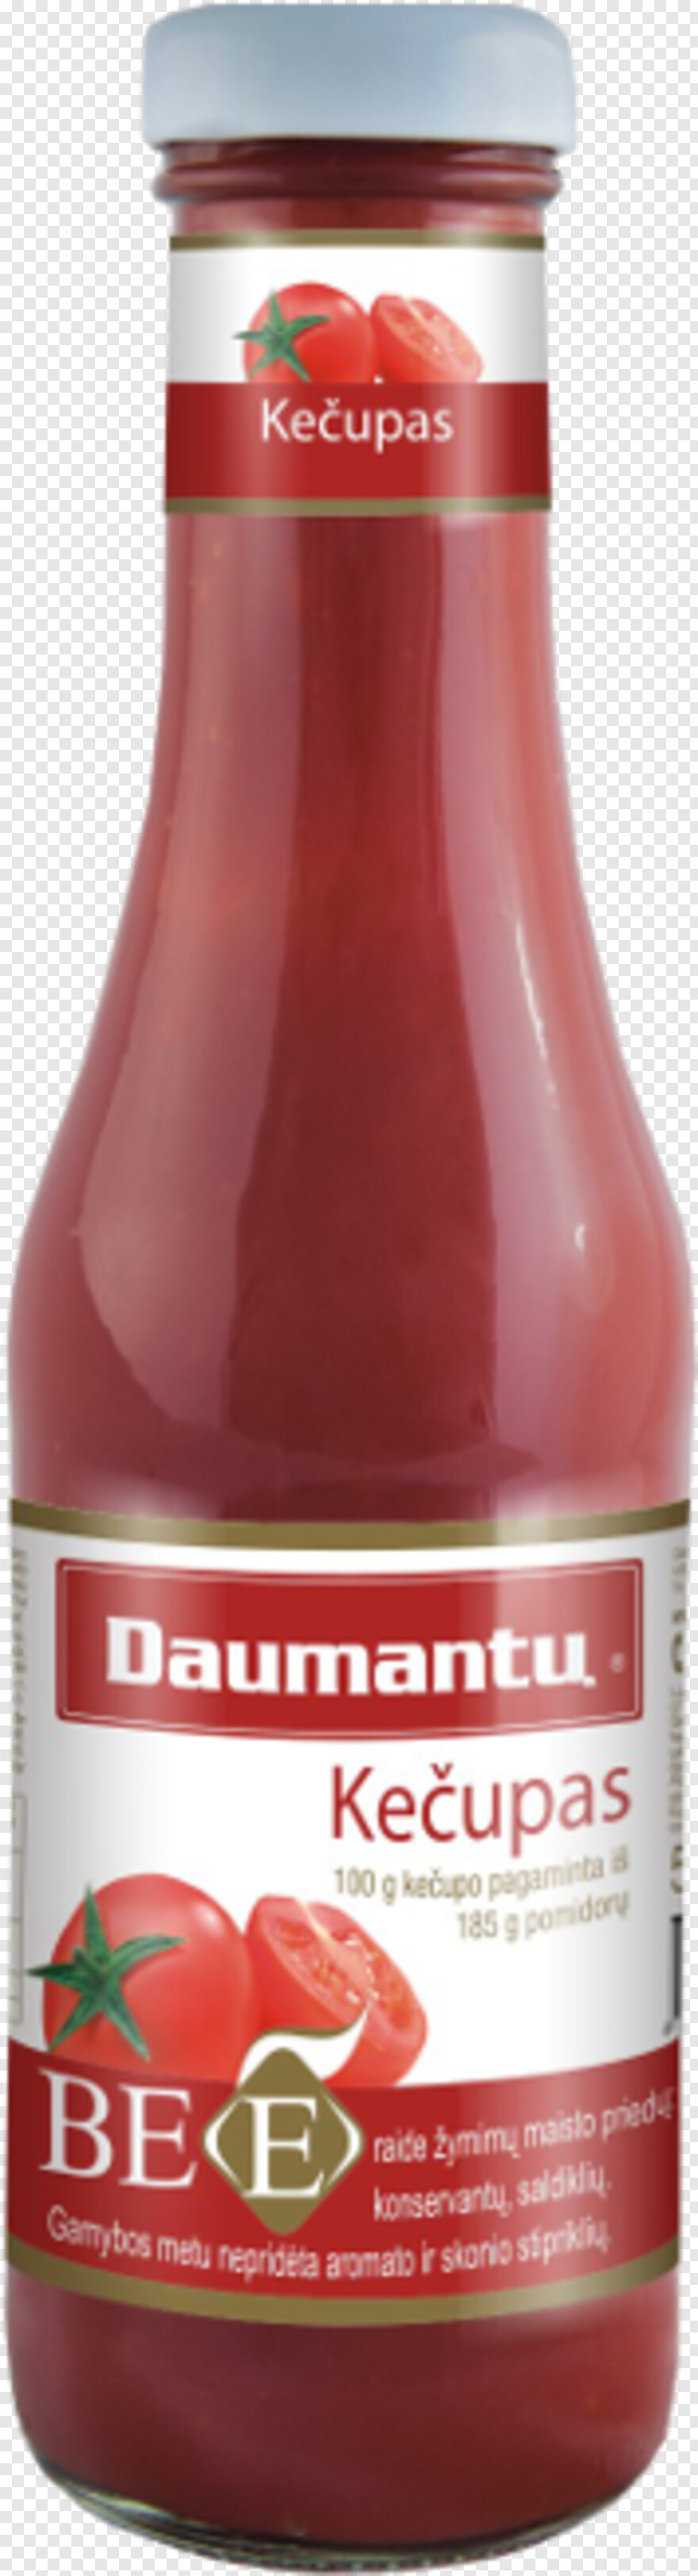 ketchup-bottle # 732742